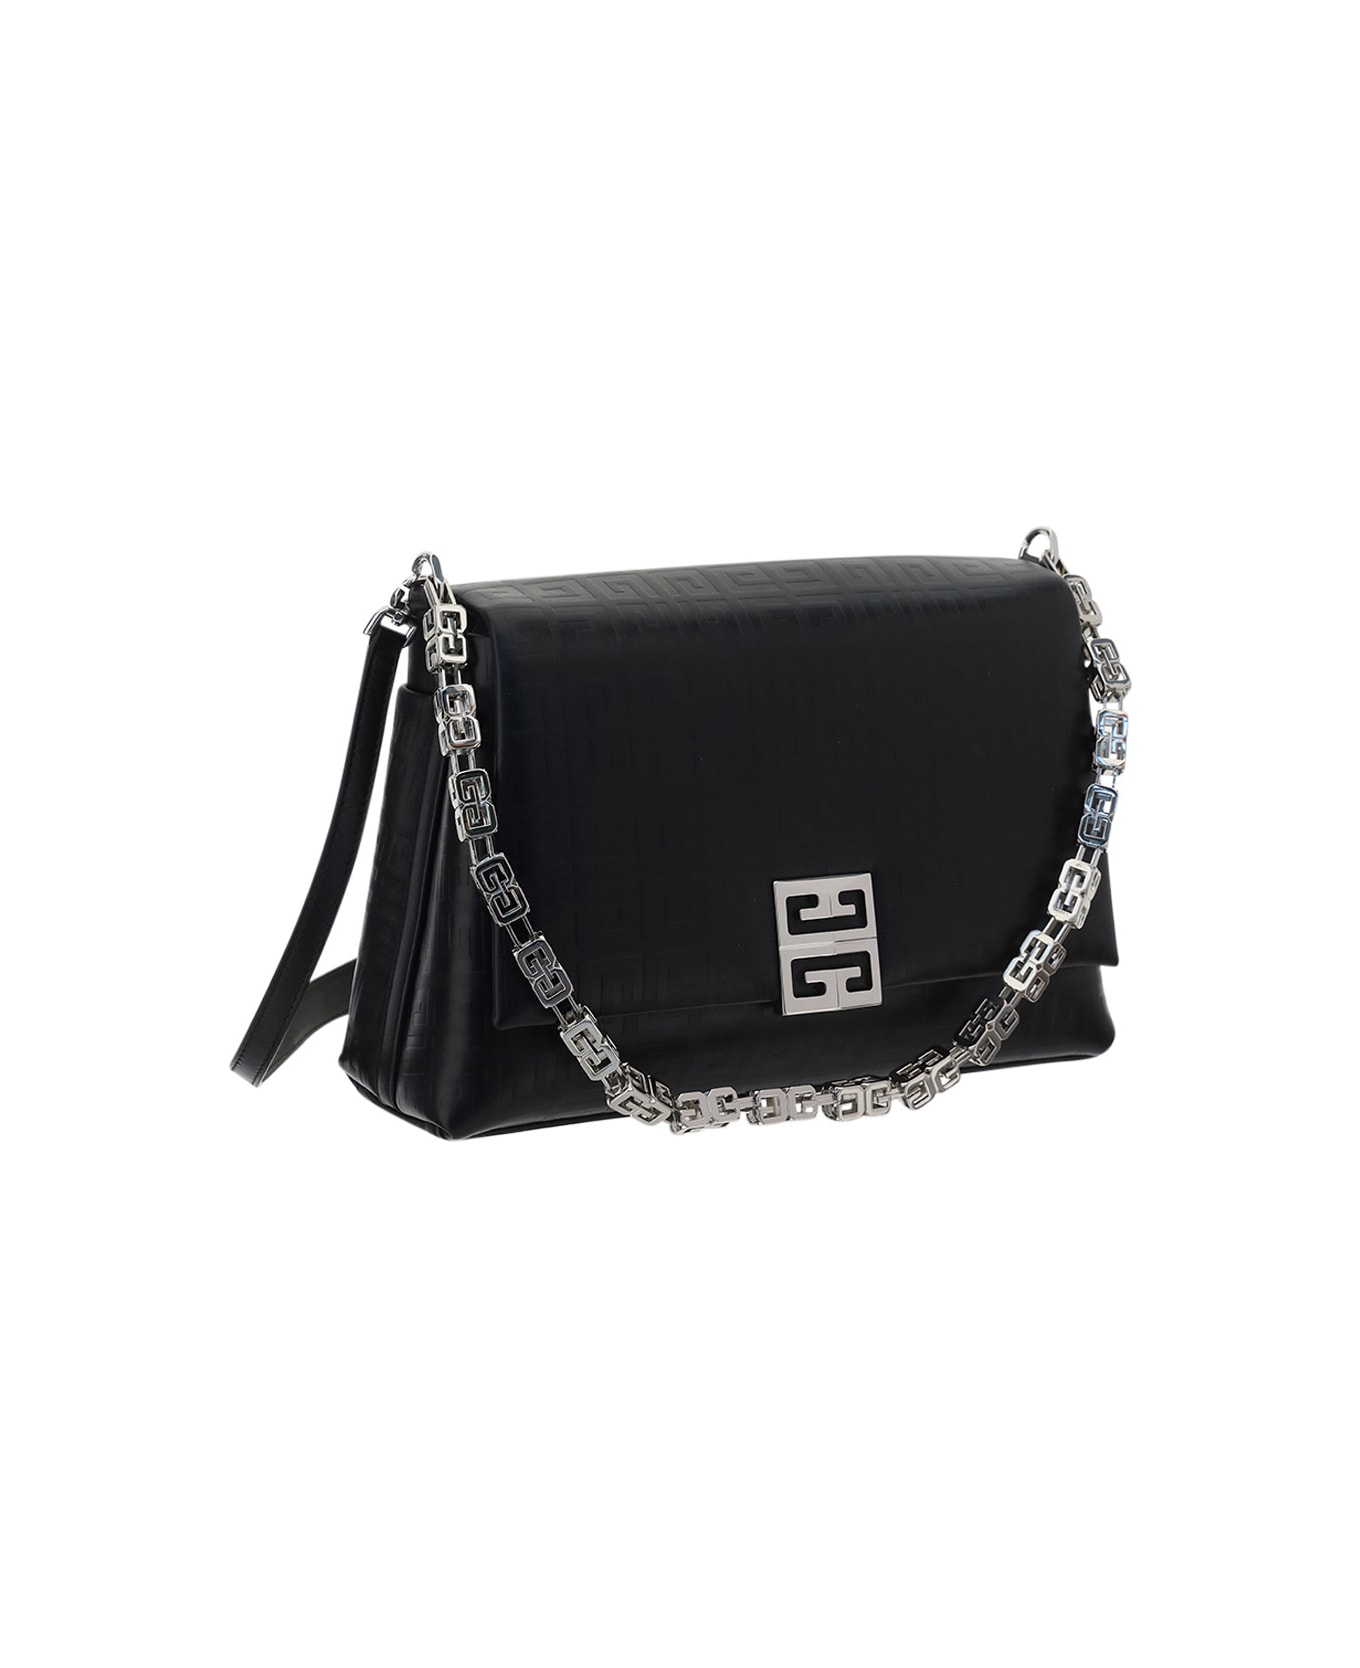 Givenchy 4g Soft Bag - Black